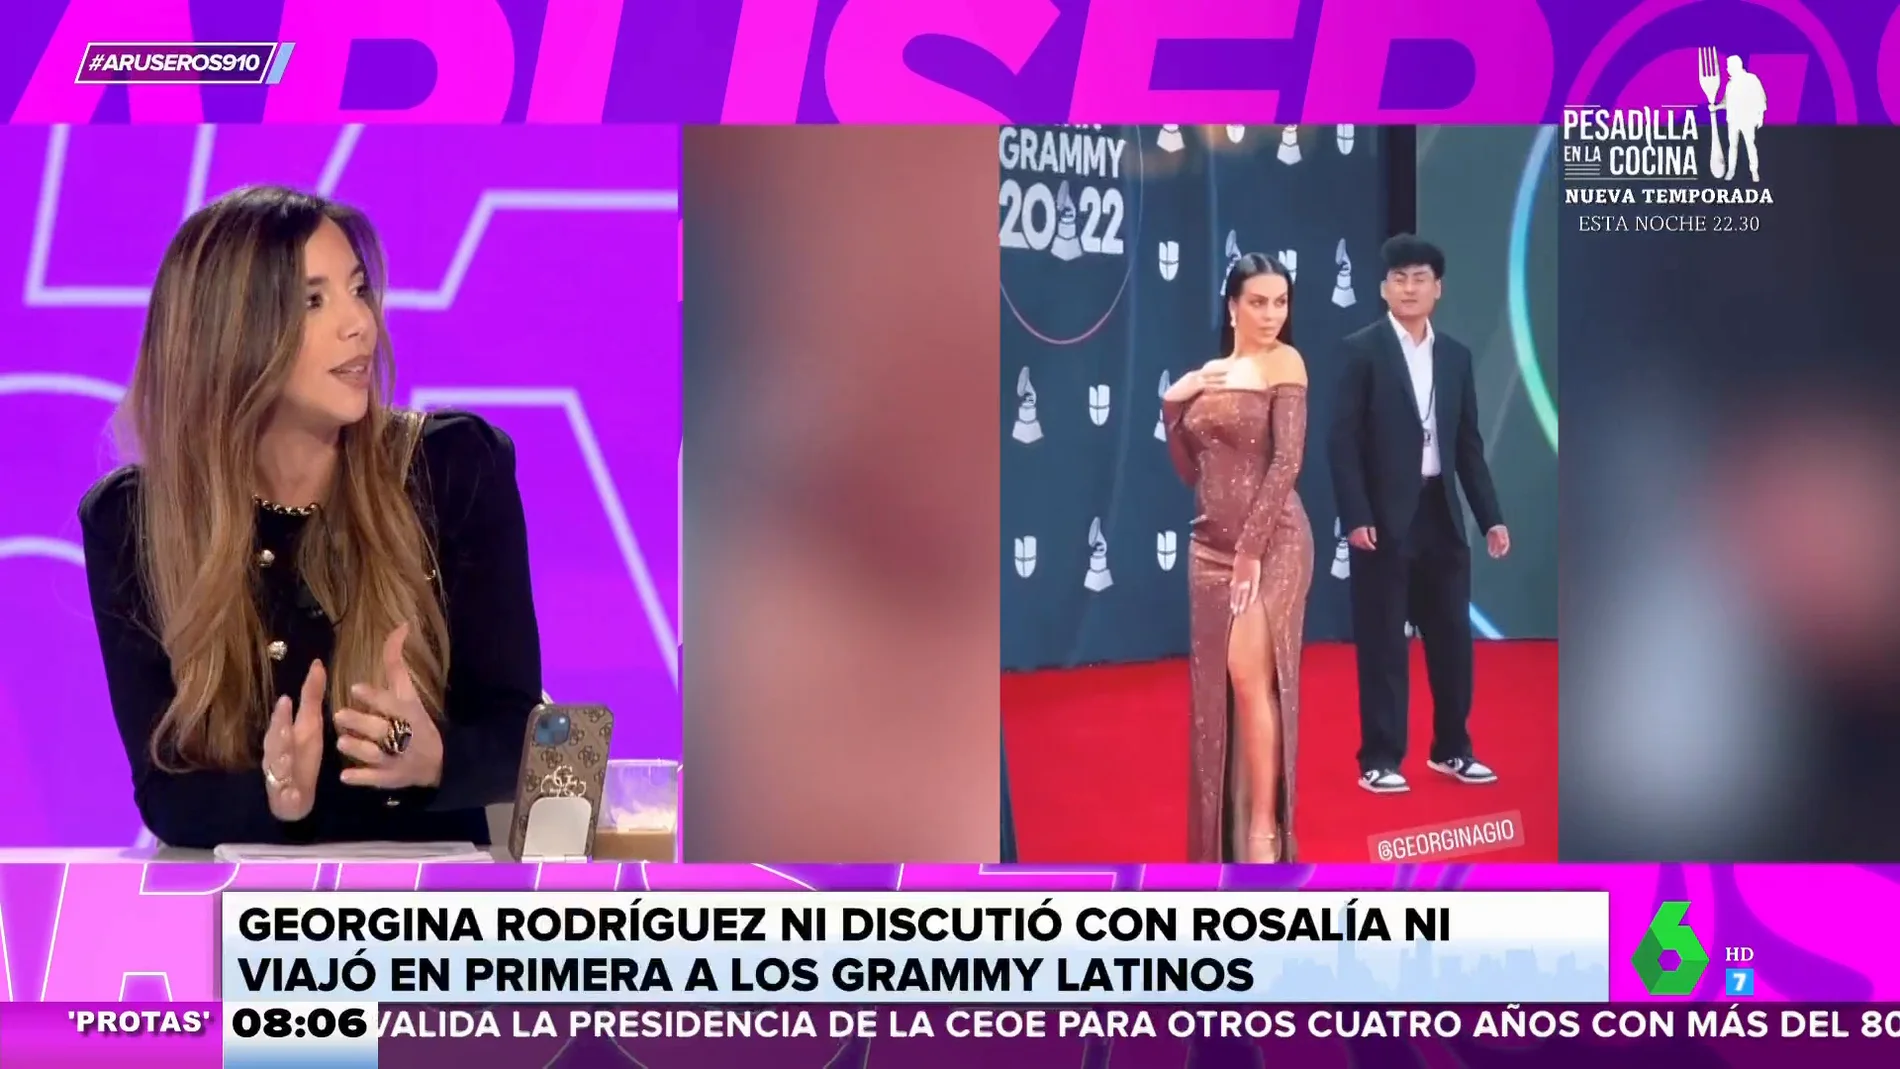 ¿Qué ocurrió realmente entre Georgina Rodríguez y Rosalía en los Grammy Latinos?